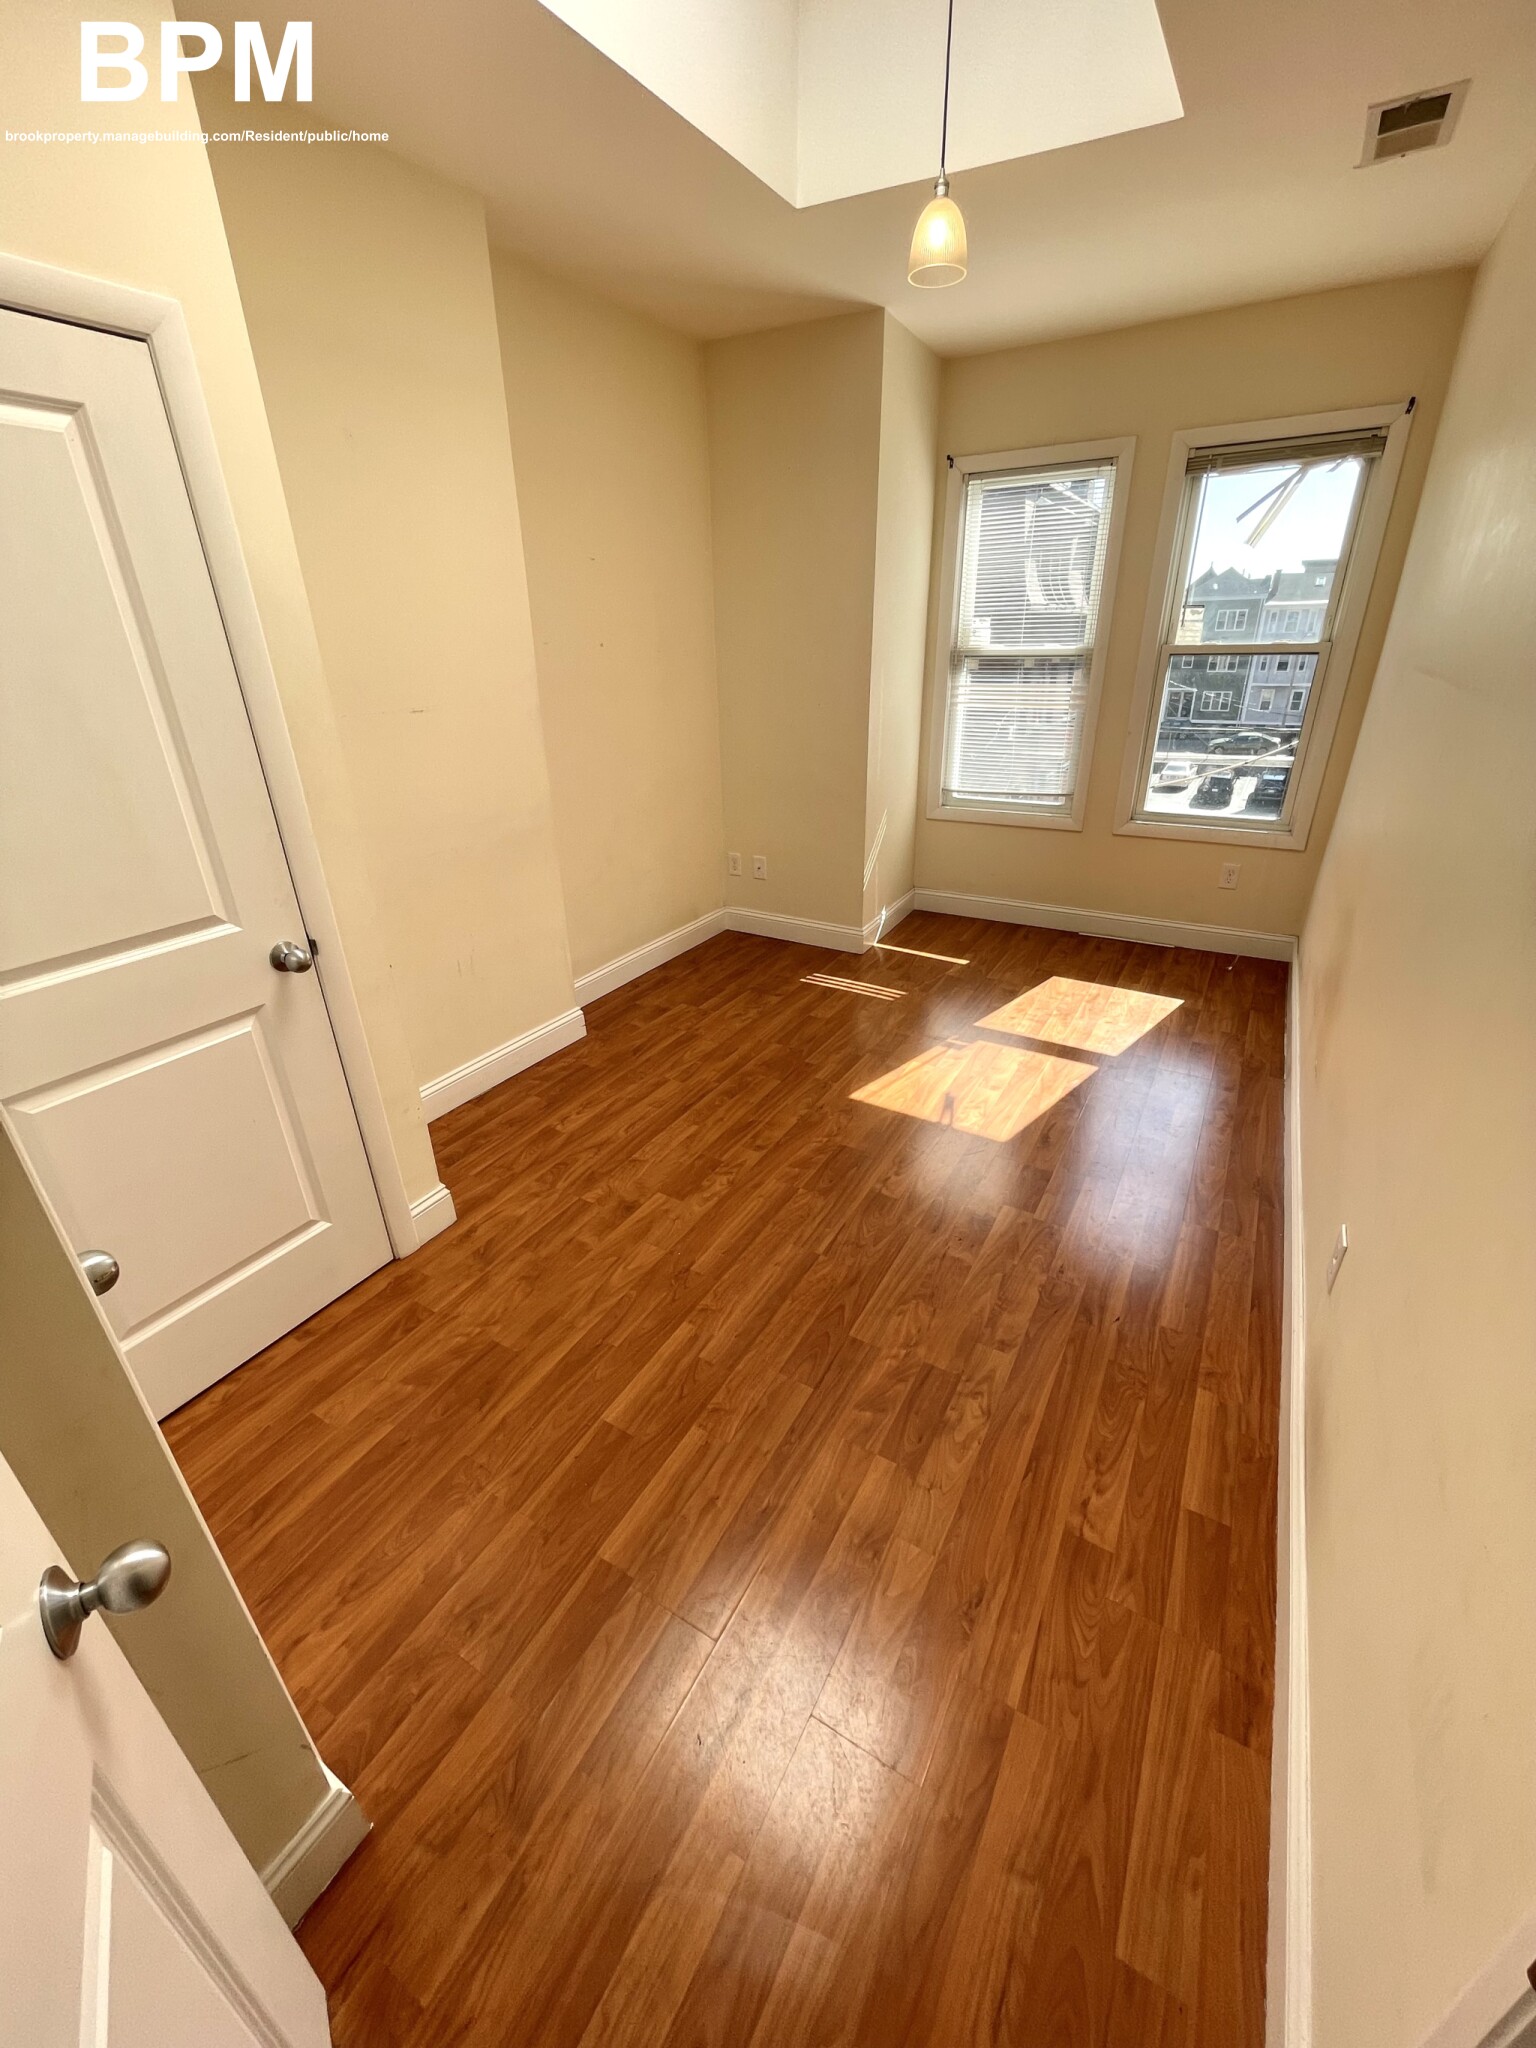 Photos of apartment on Lexington St.,Boston MA 02128